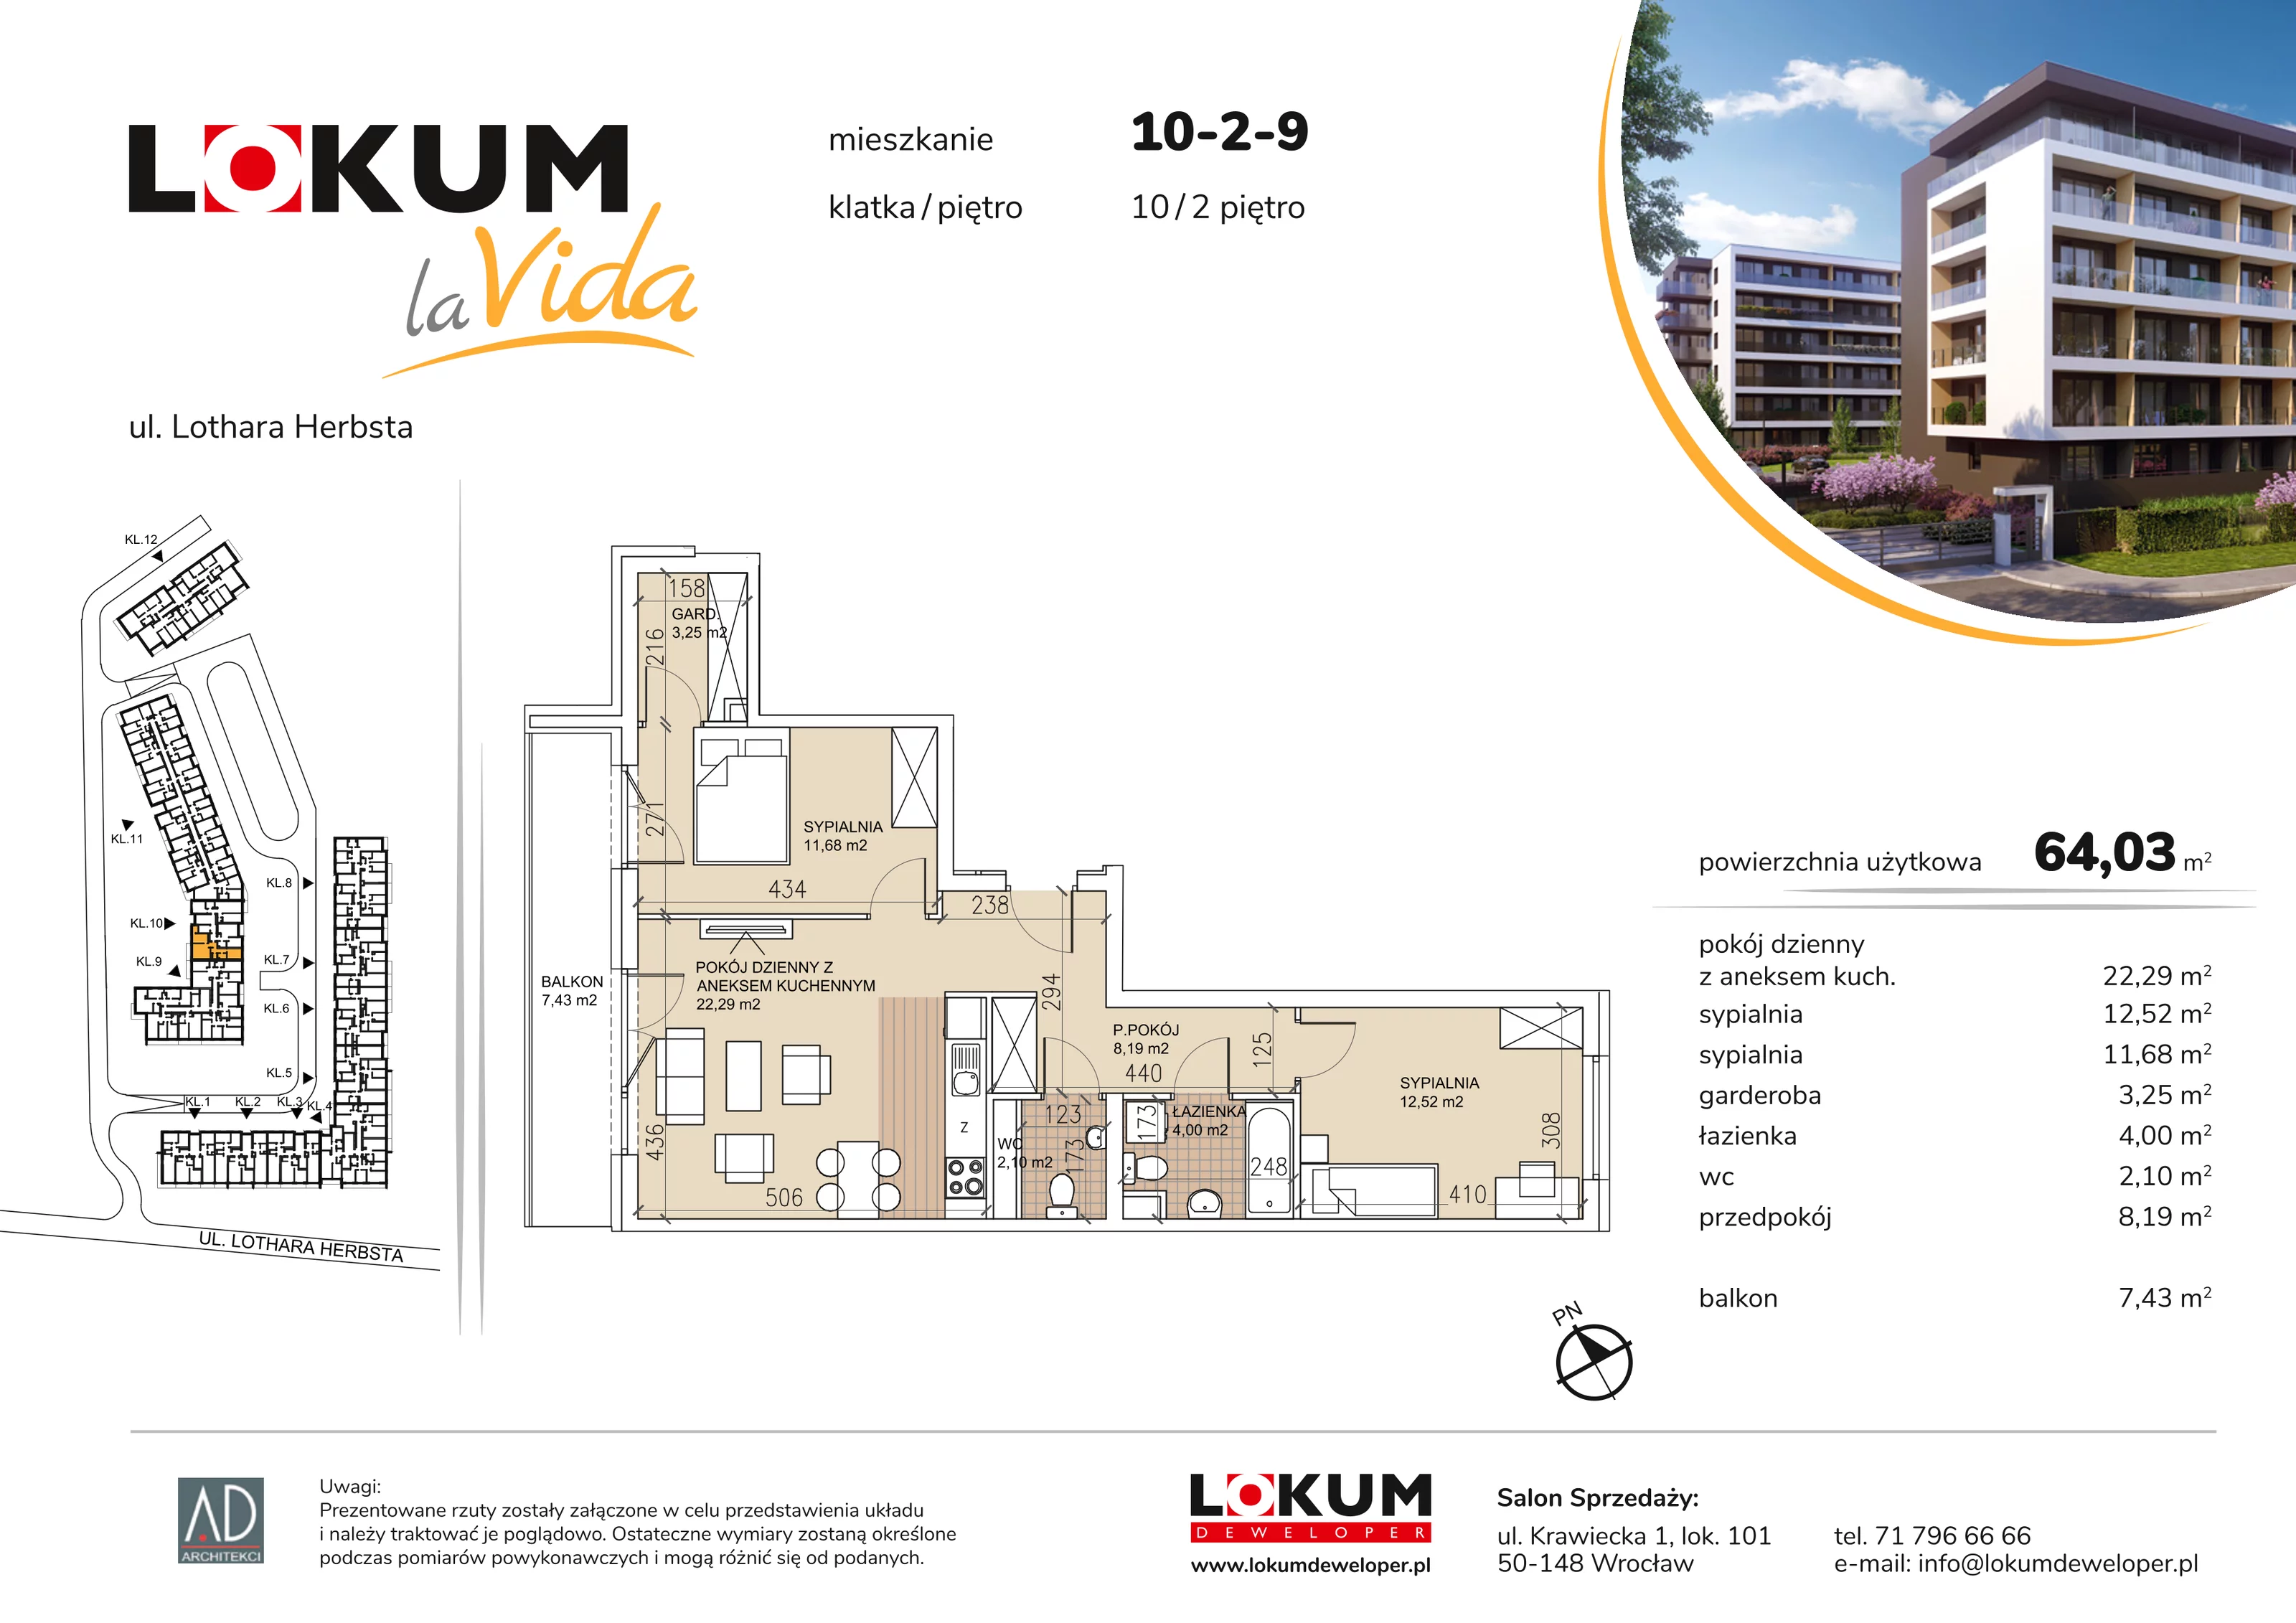 Mieszkanie 64,03 m², piętro 2, oferta nr 10-2-9, Lokum la Vida, Wrocław, Sołtysowice, ul. Lothara Herbsta